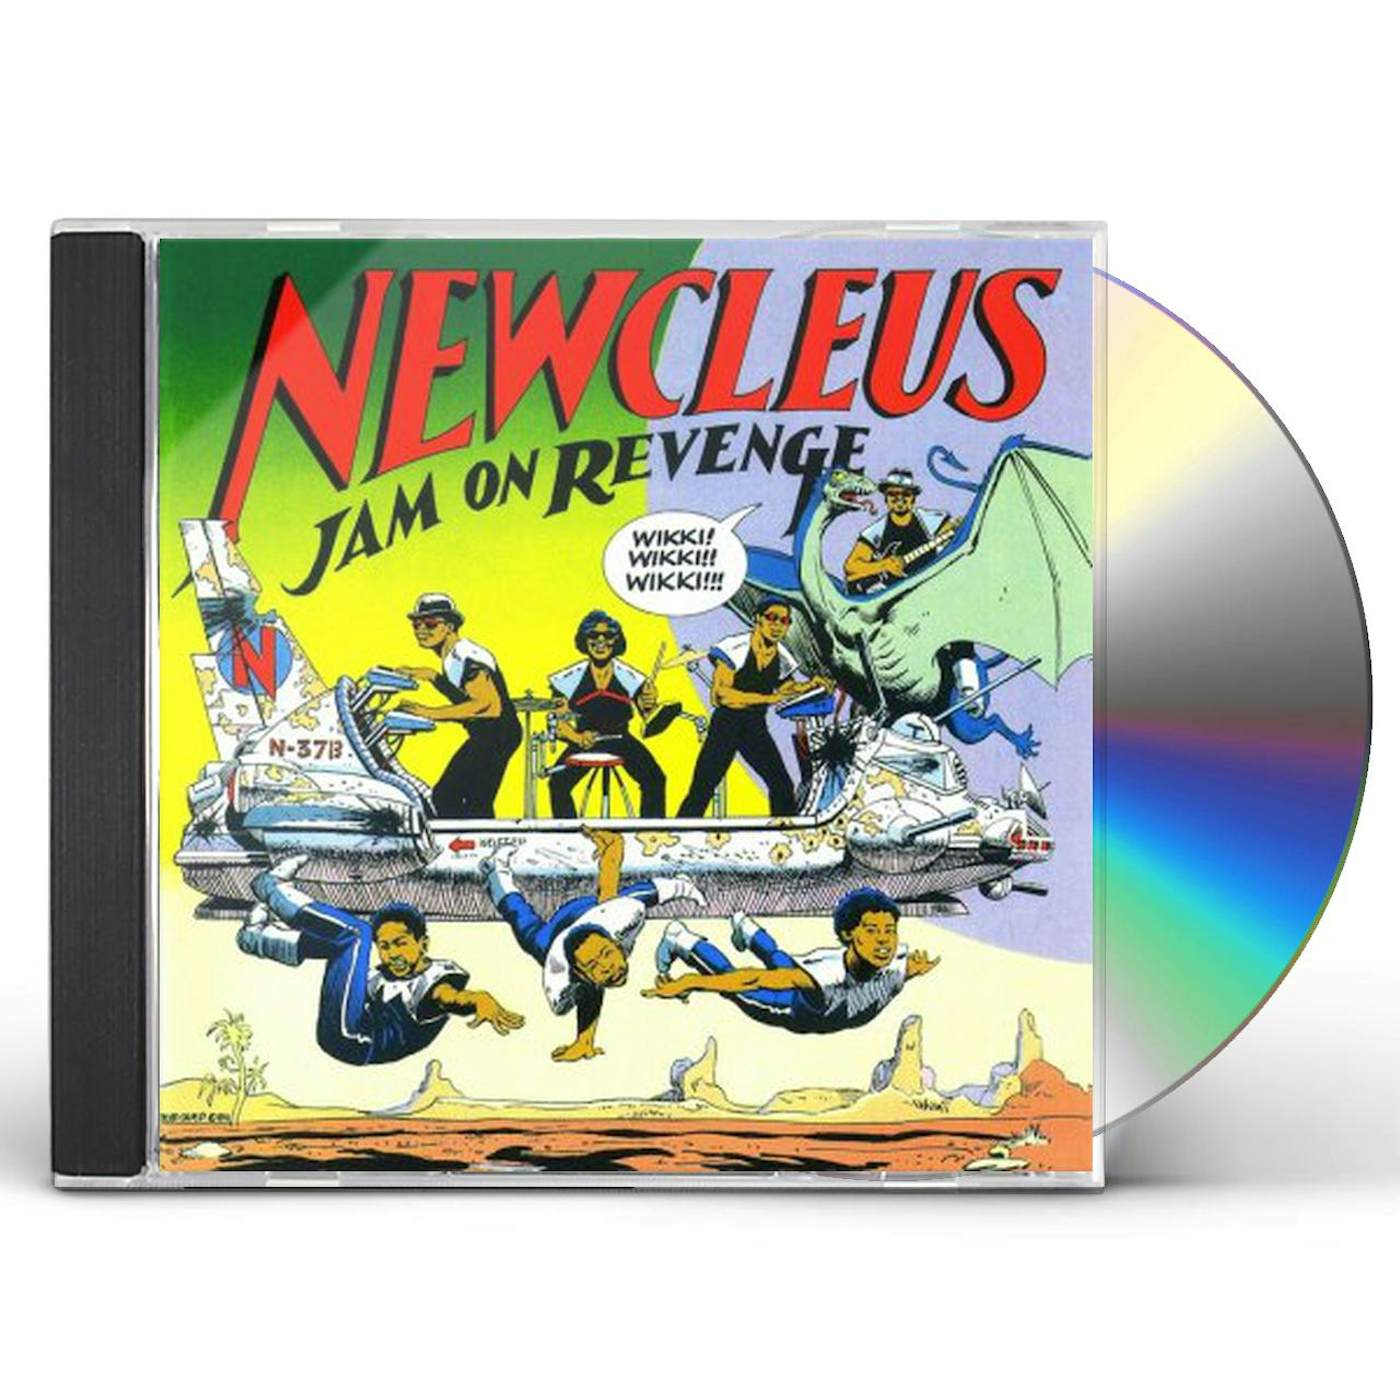 Newcleus JAM ON REVENGE CD